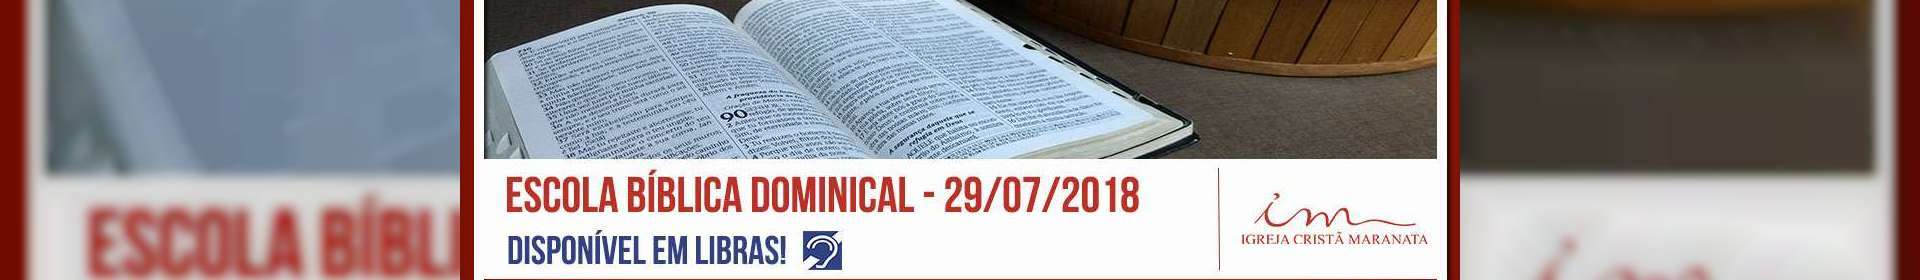 Escola Bíblica Dominical - 29/07/2018